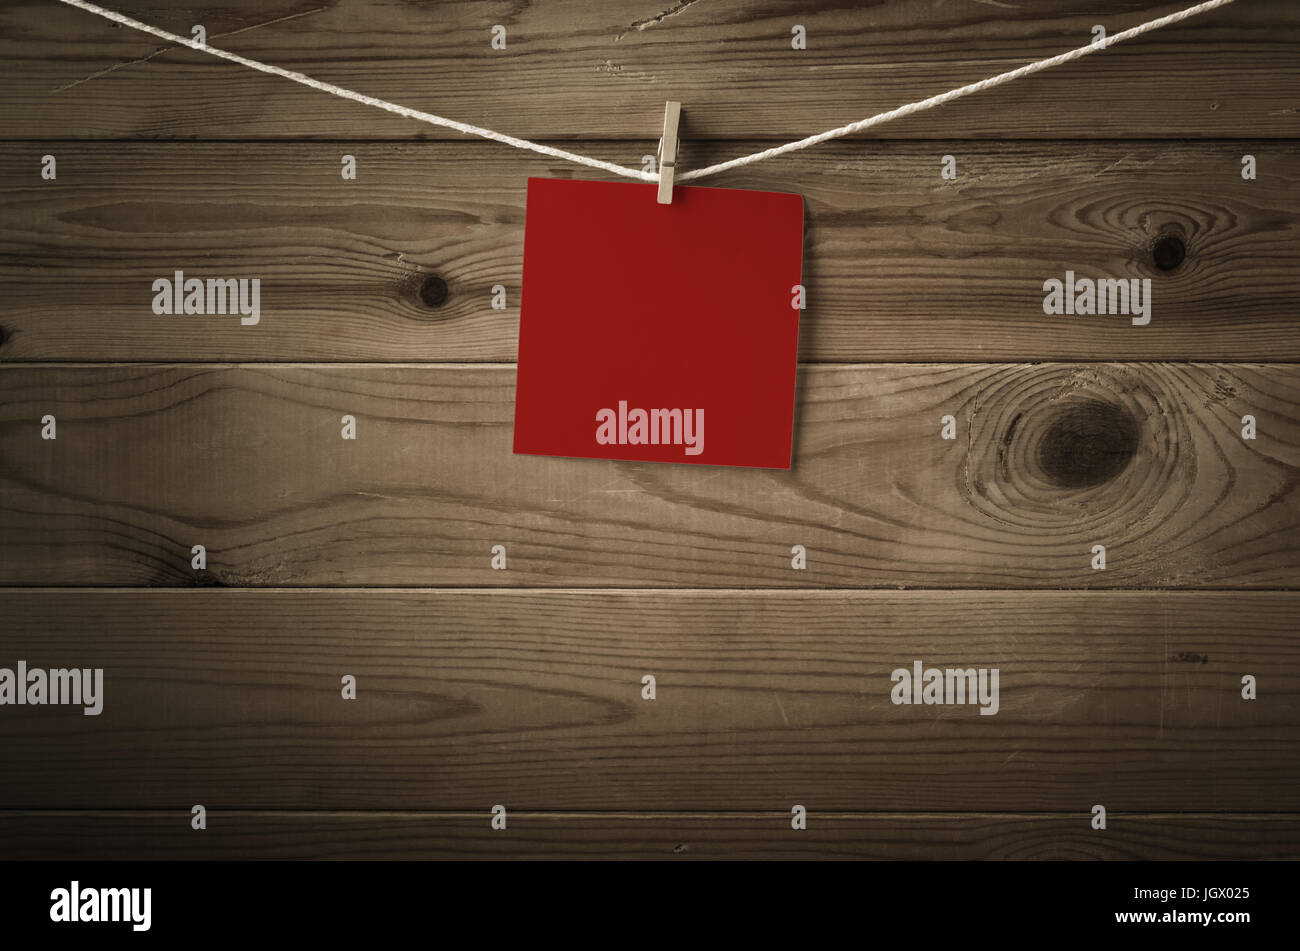 Eine einzelne Quadrat der festlichen roten Notizpapier, gekoppelt an eine Zeichenfolge, die Wäscheleine.  Holzbohle Hintergrund.  Niedrige Sättigung und Vignette gibt eine Retro-o Stockfoto